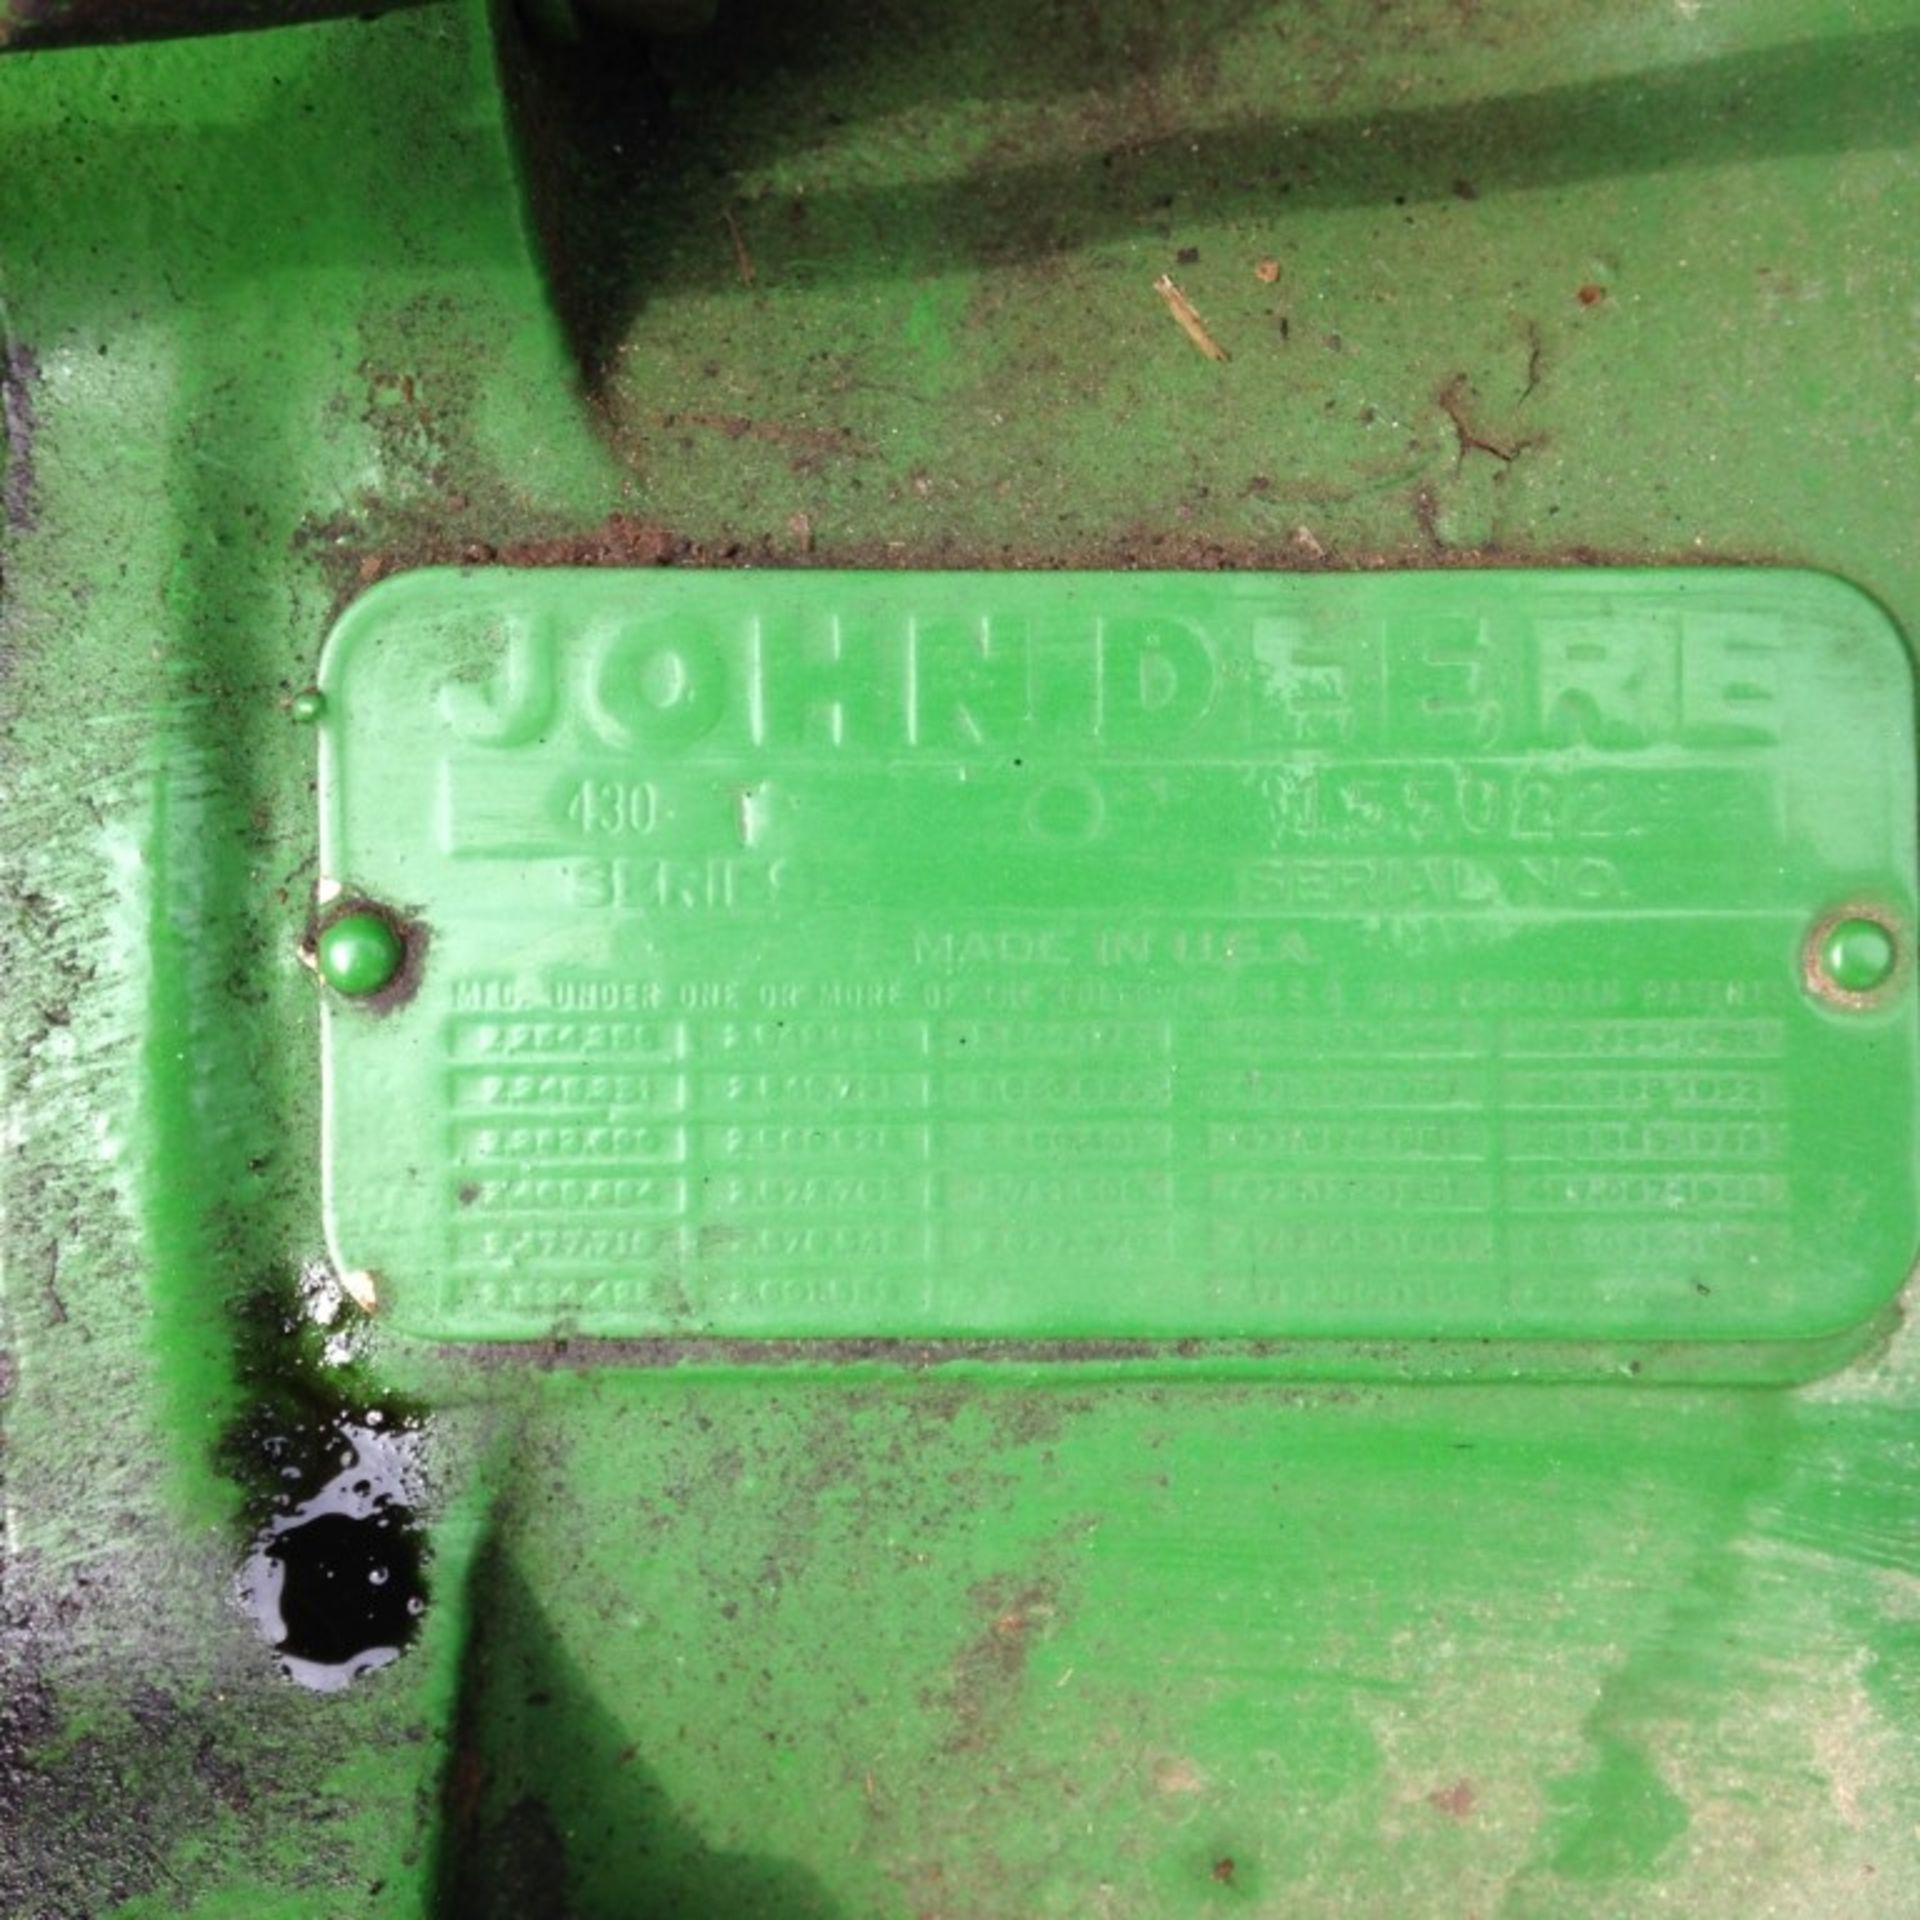 John Deere 430T Tractor - Image 2 of 11